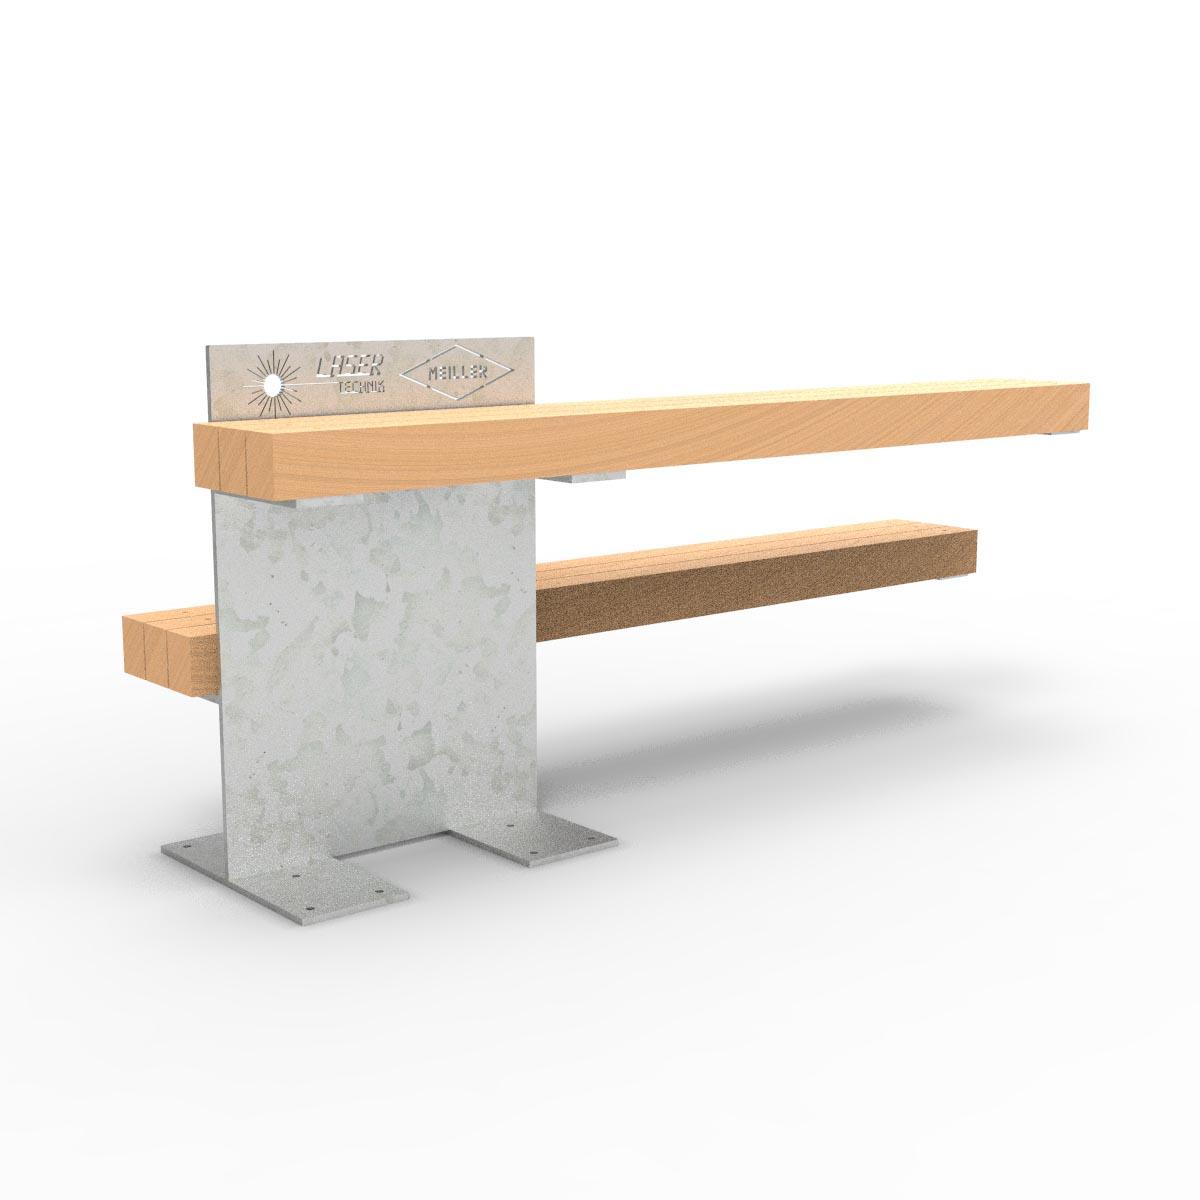 FOREST Tisch-Bank-Kombination mit Gestell aus verzinktem Stahl und Holzauflagen